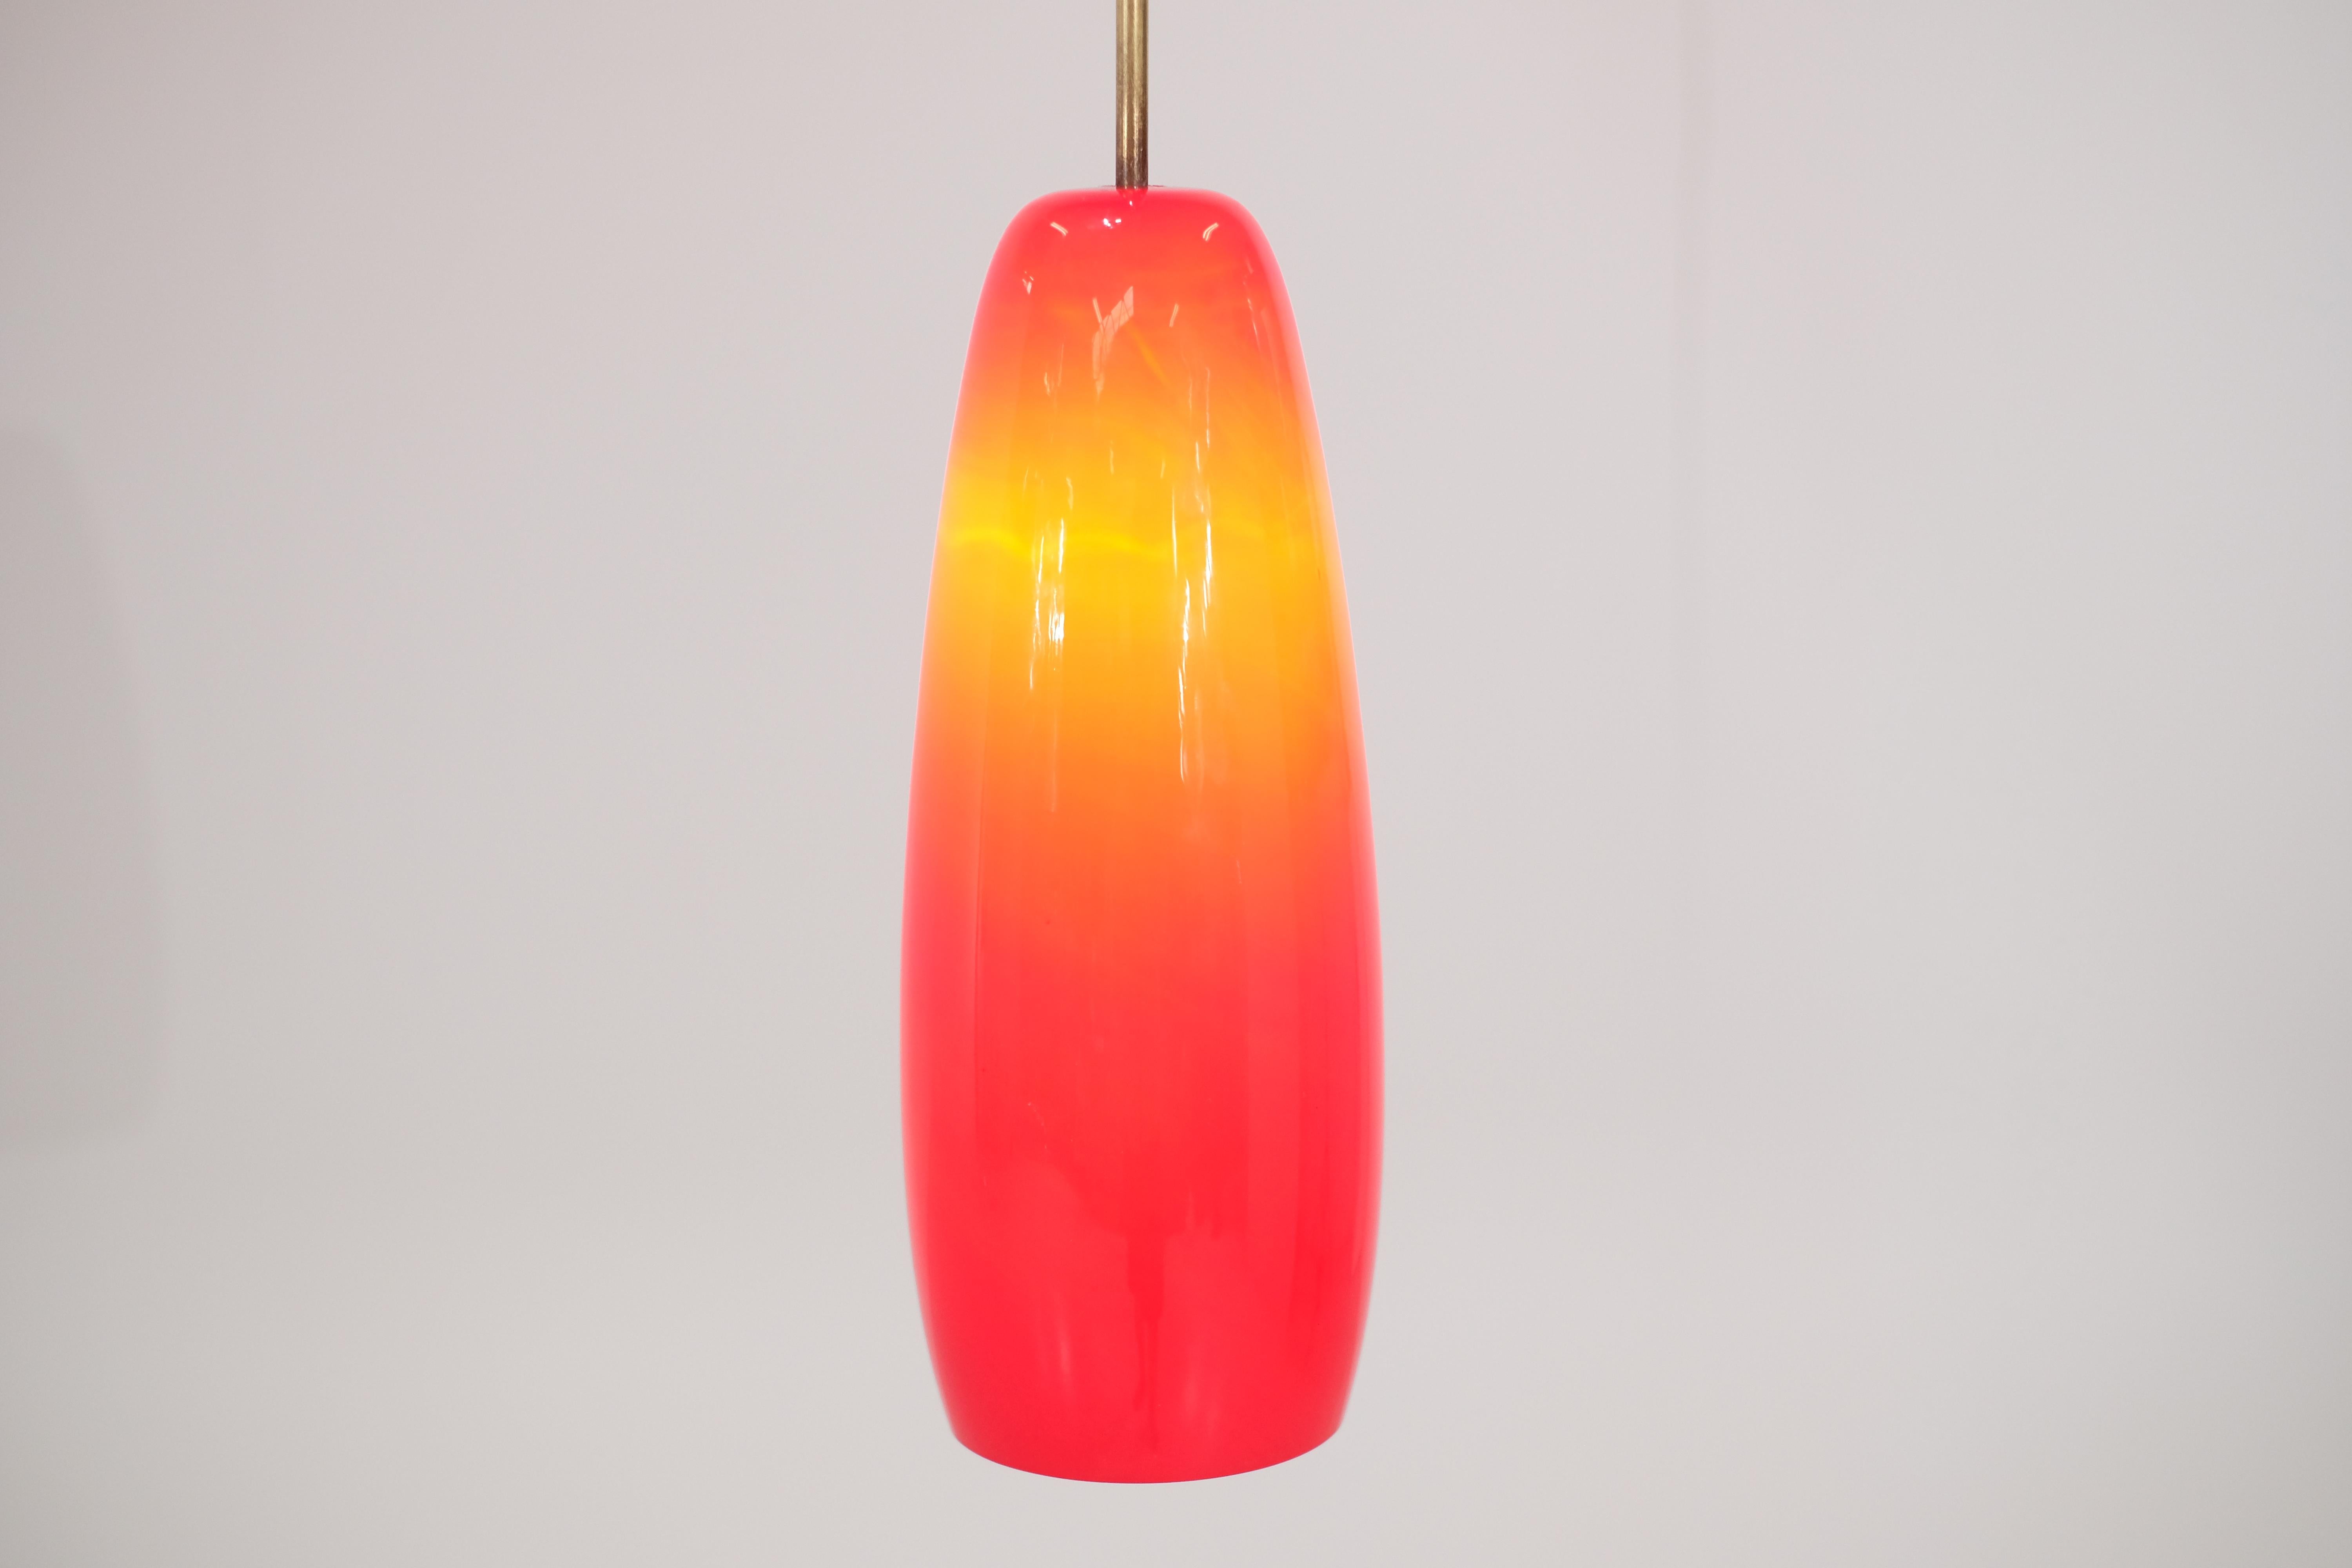 Magnifique lampe italienne en opaline rouge des années 70.
Cette lampe offre un dégradé de lumière particulièrement intéressant. 
N'hésitez pas à demander plus de photos ou de vidéos de la lampe.
Il est en très bon état vintage.